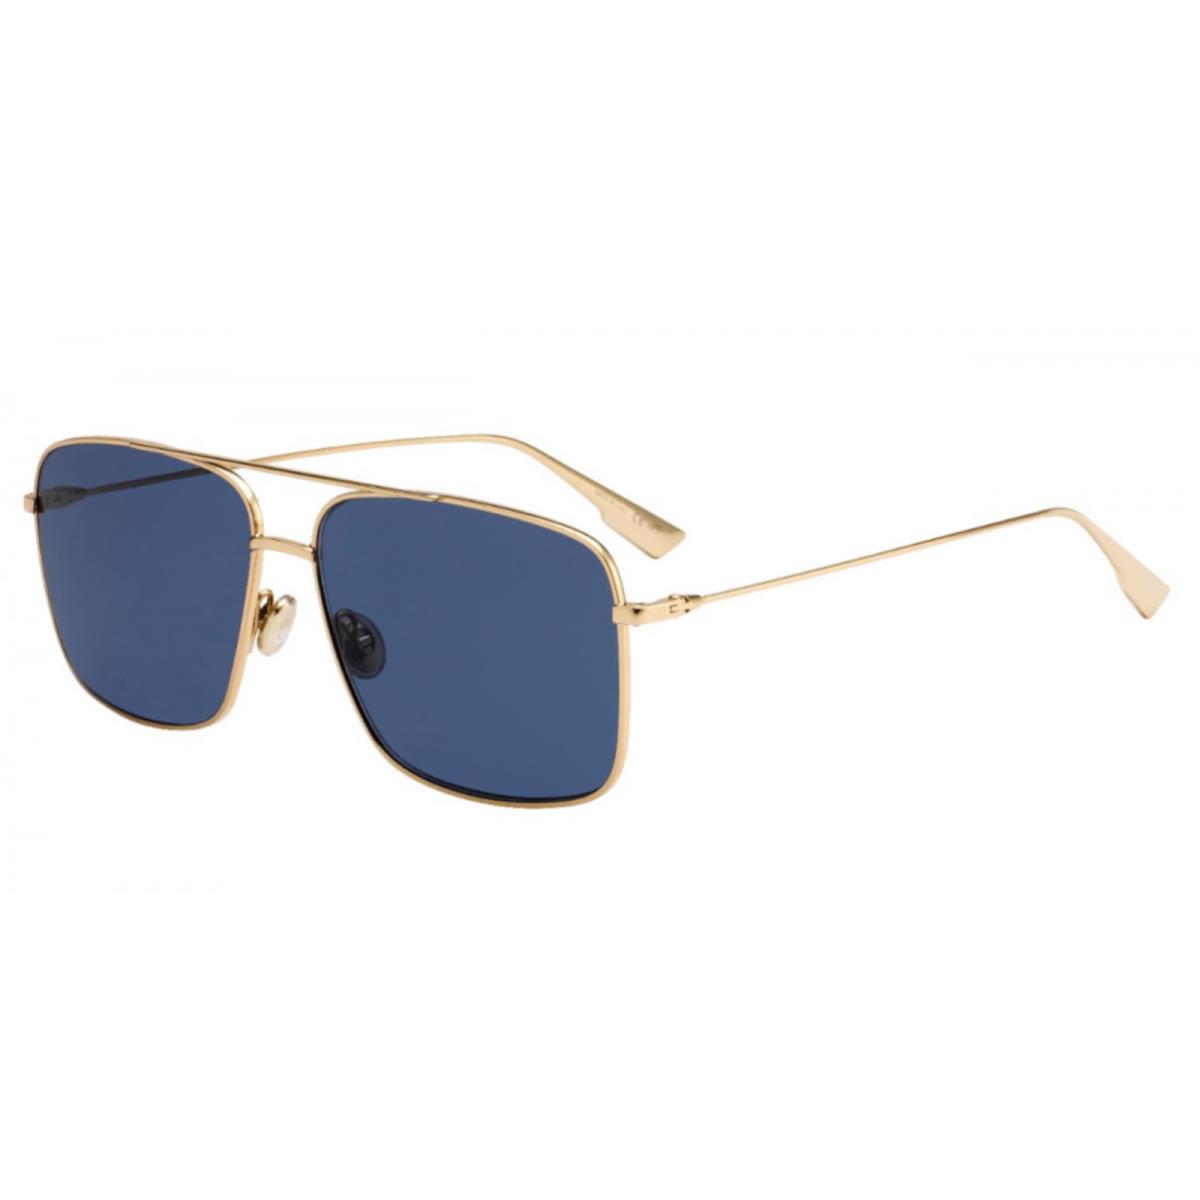 Christian Dior StellaireO3S Aviator Sunglasses J5GKU Gold Frames Blue Lenses